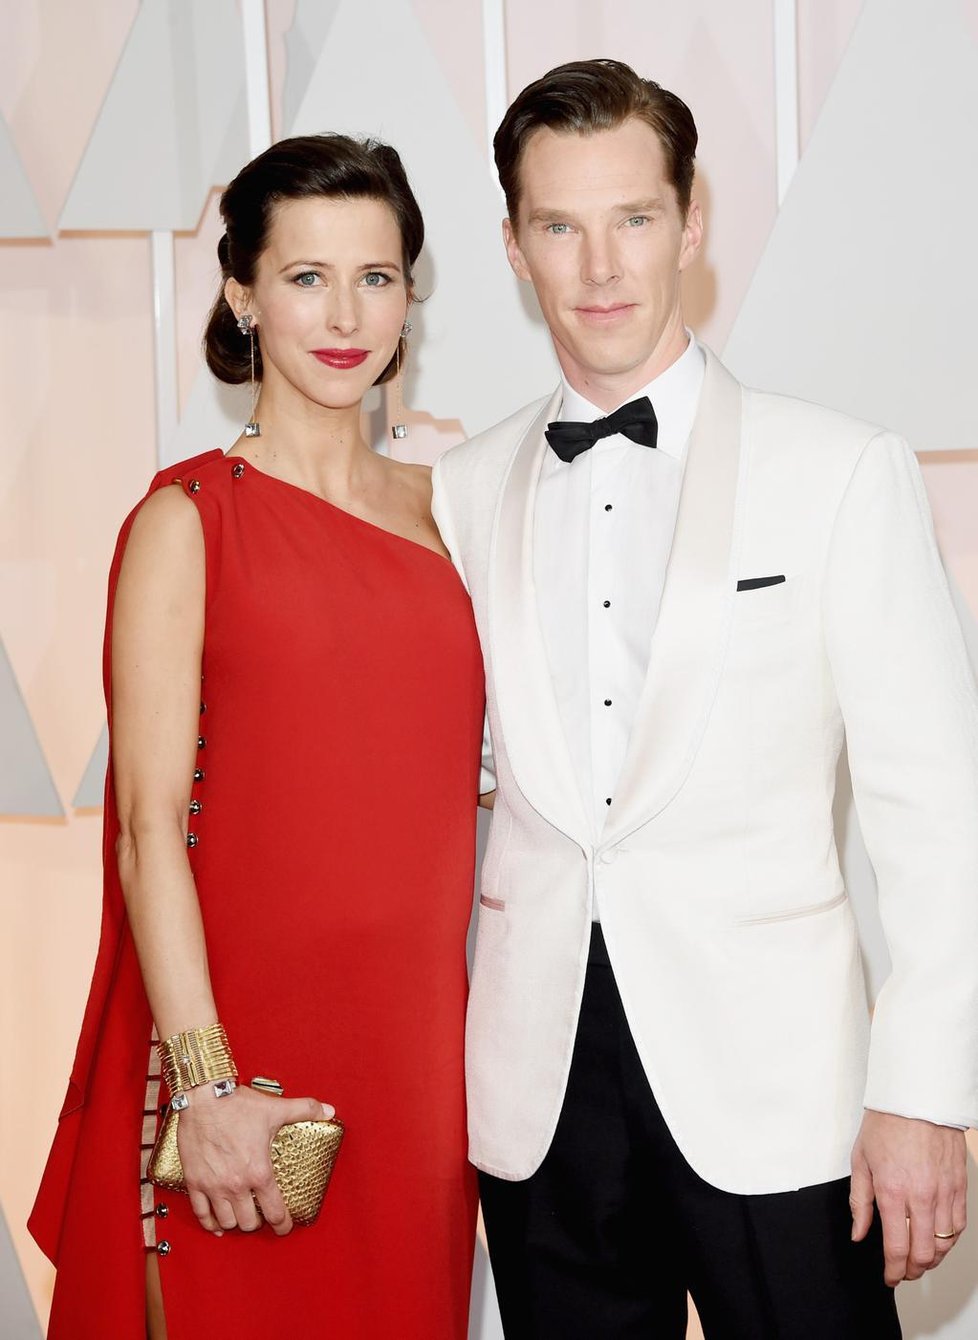 Herec Benedict Cumberbatch si vzal Sophii Hunter přesně na Valentýna!